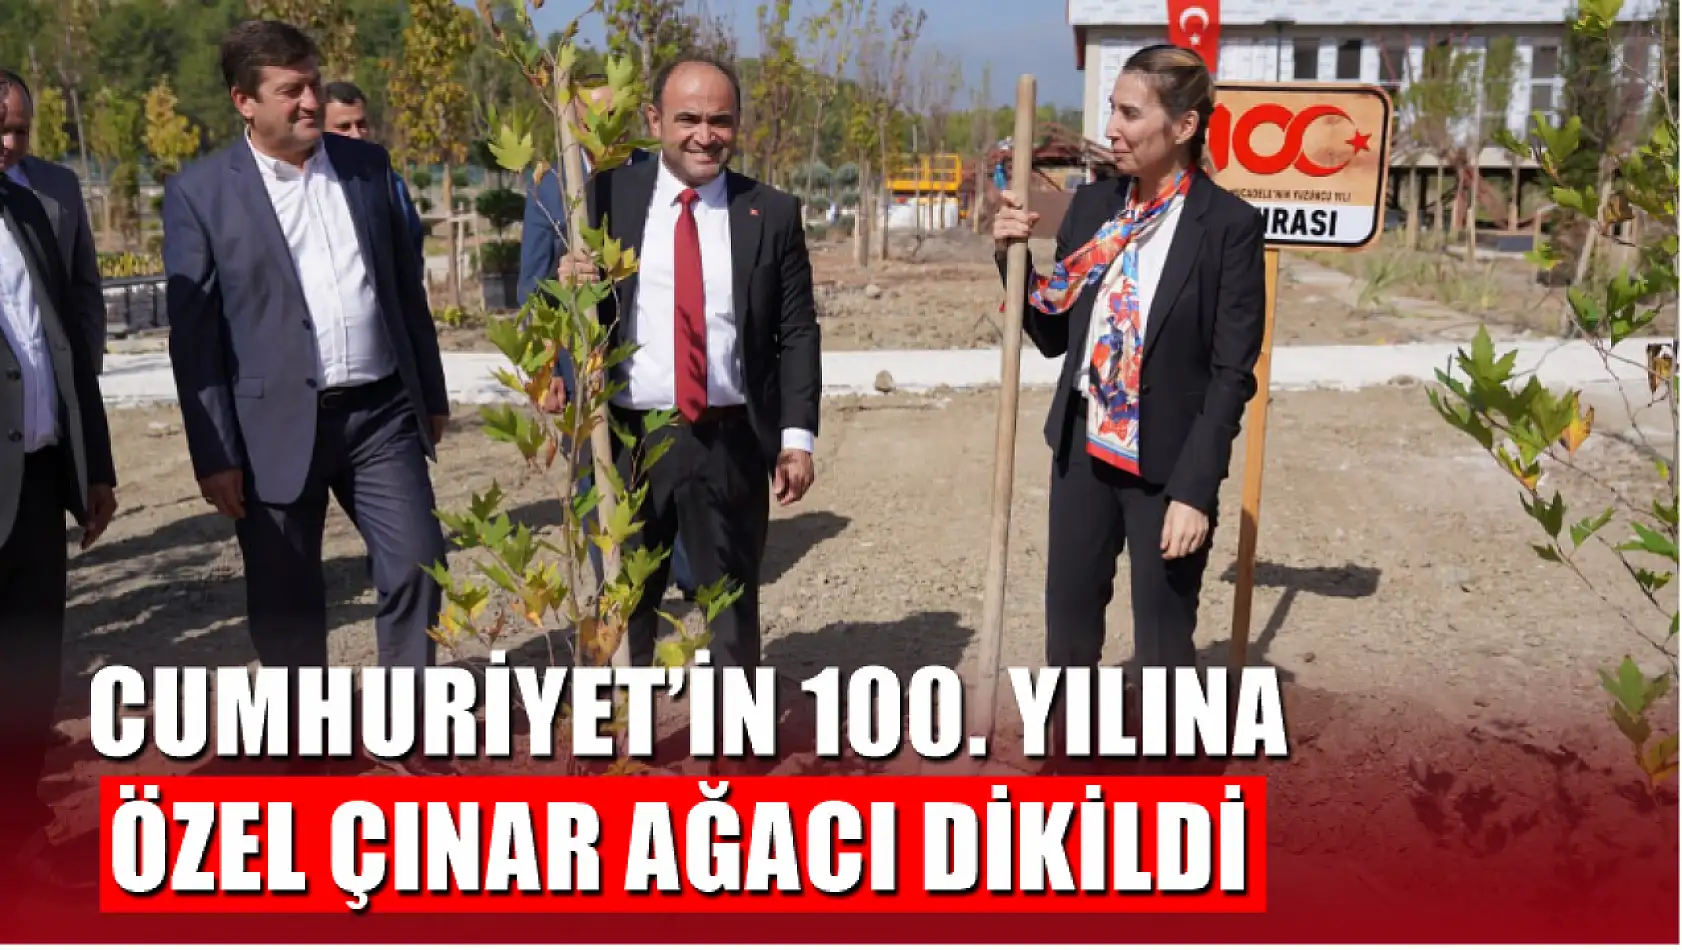 Seydikemer'de Cumhuriyet'in 100. Yılına Özel Çınar Ağacı Dikildi